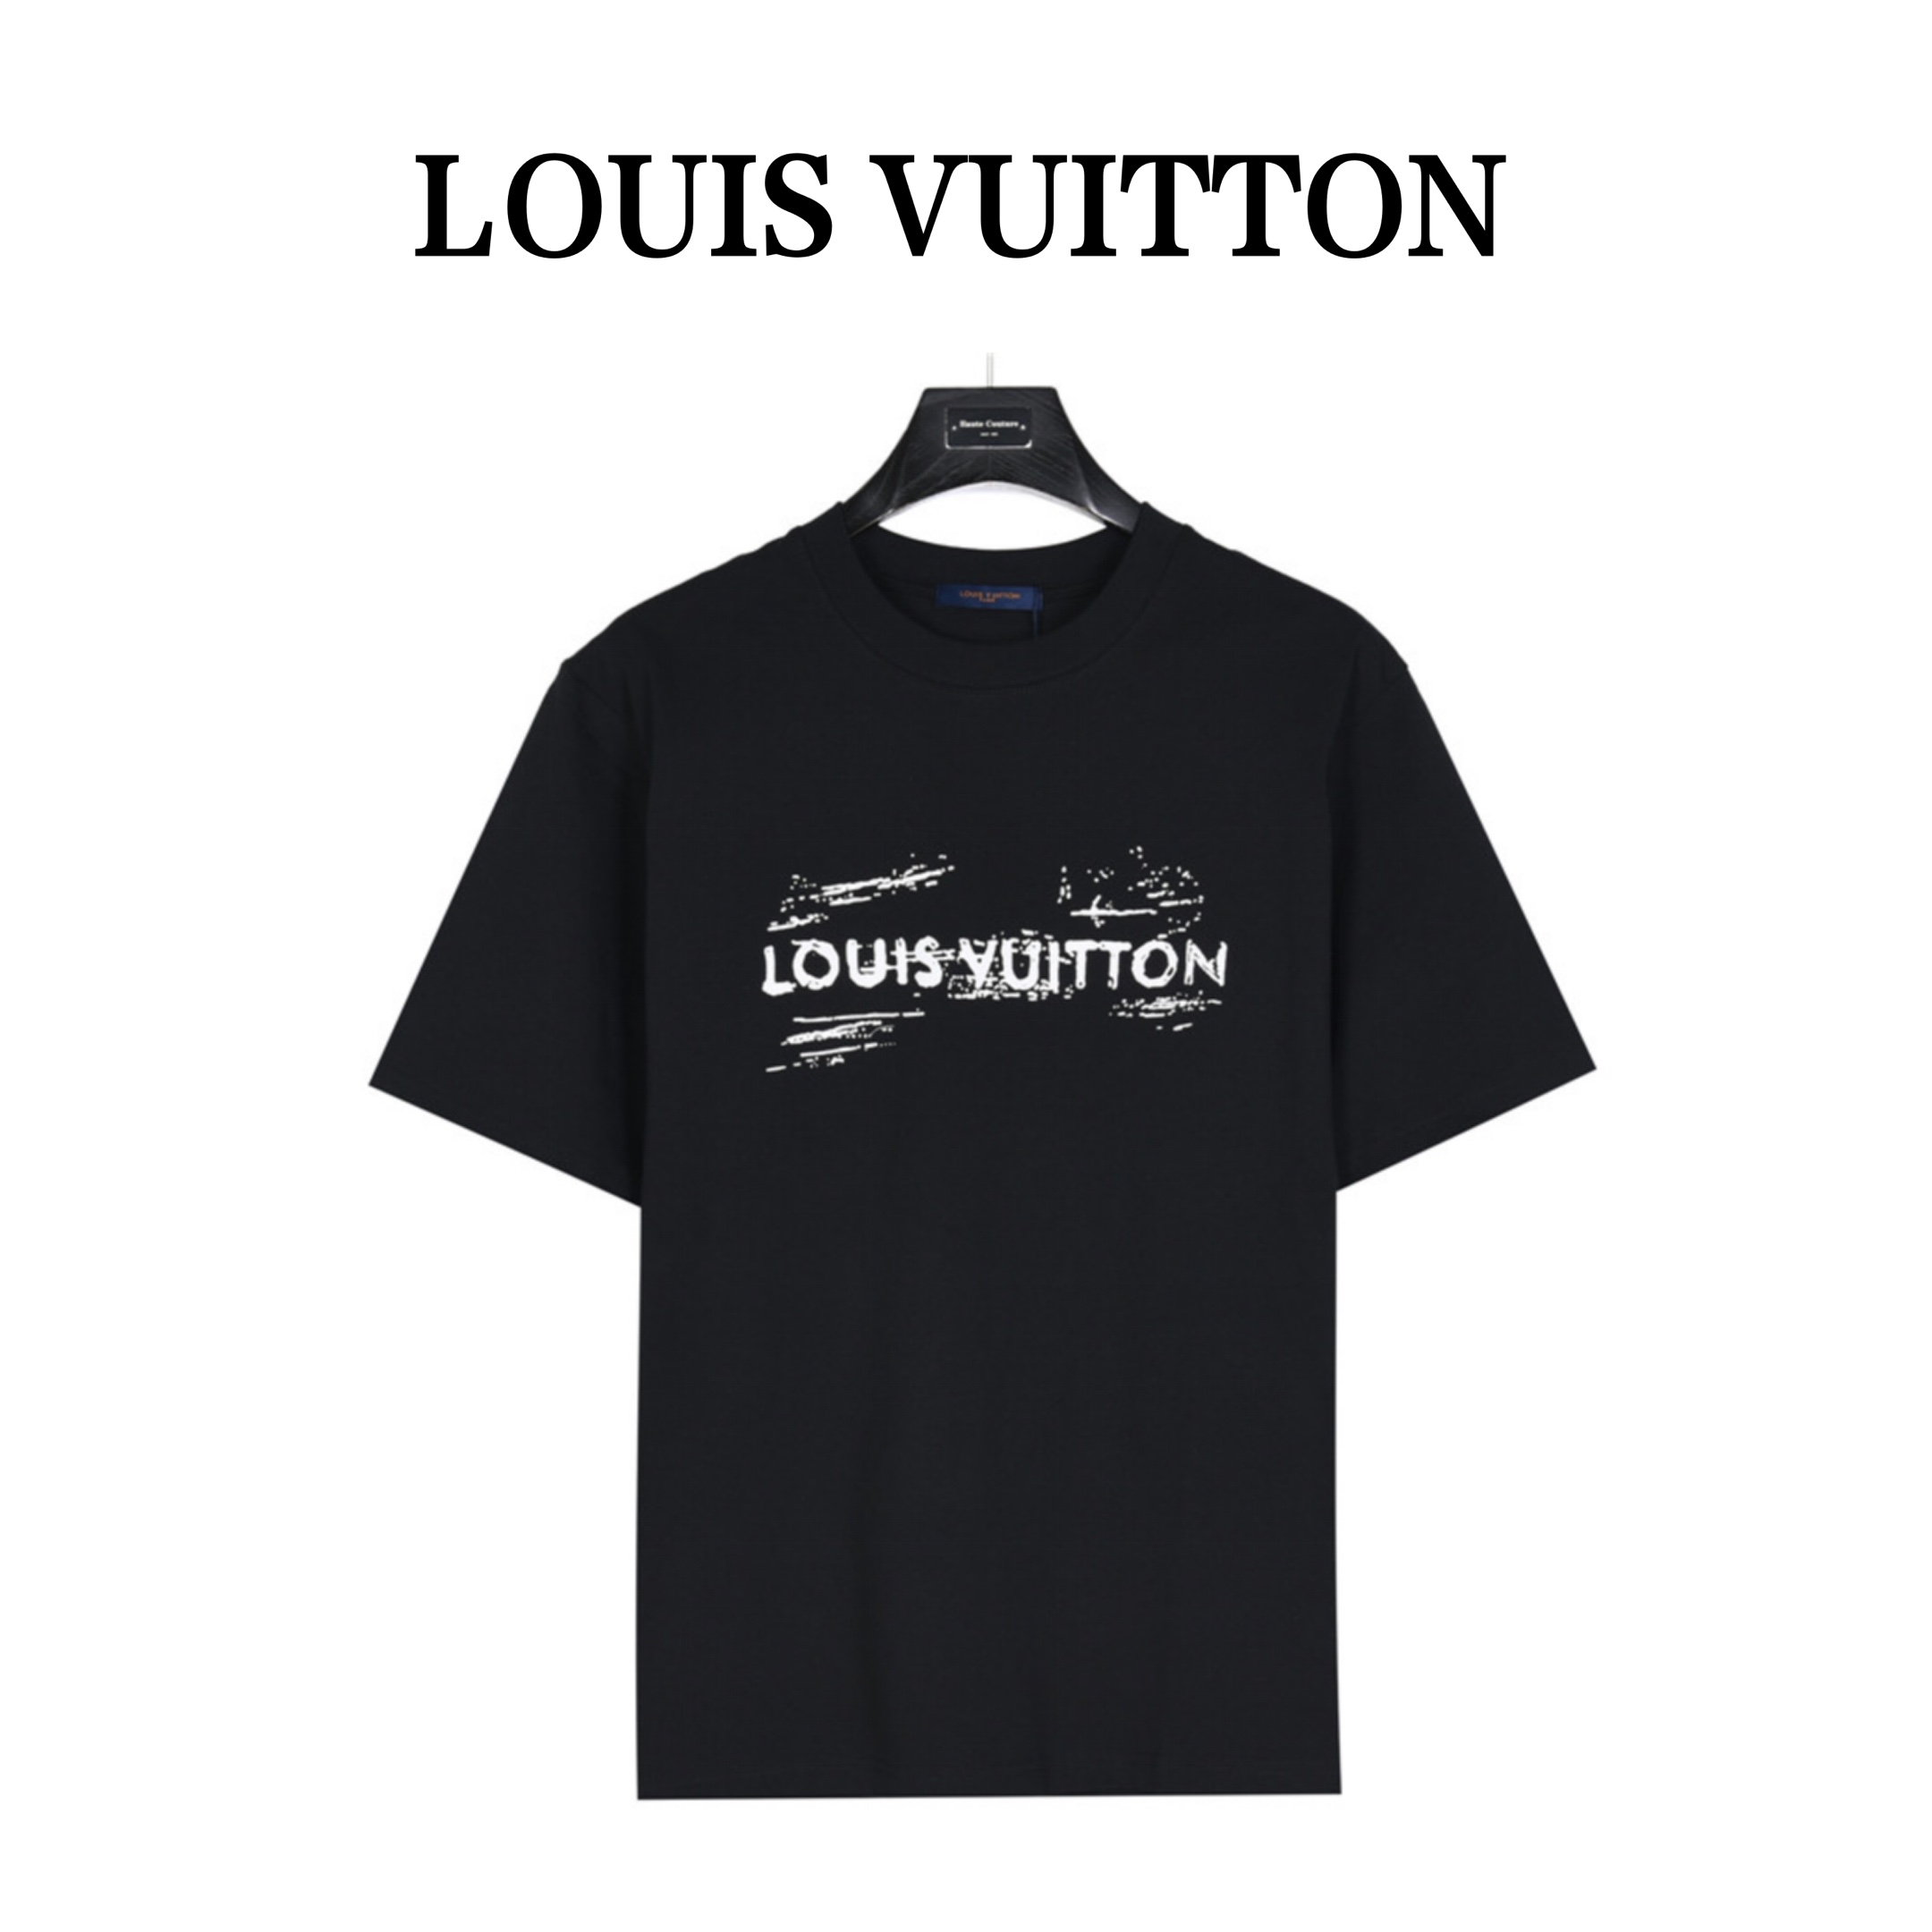 ご期待に添えずすみませんmmLOUIS VUITTONグラフィティ Tシャツ